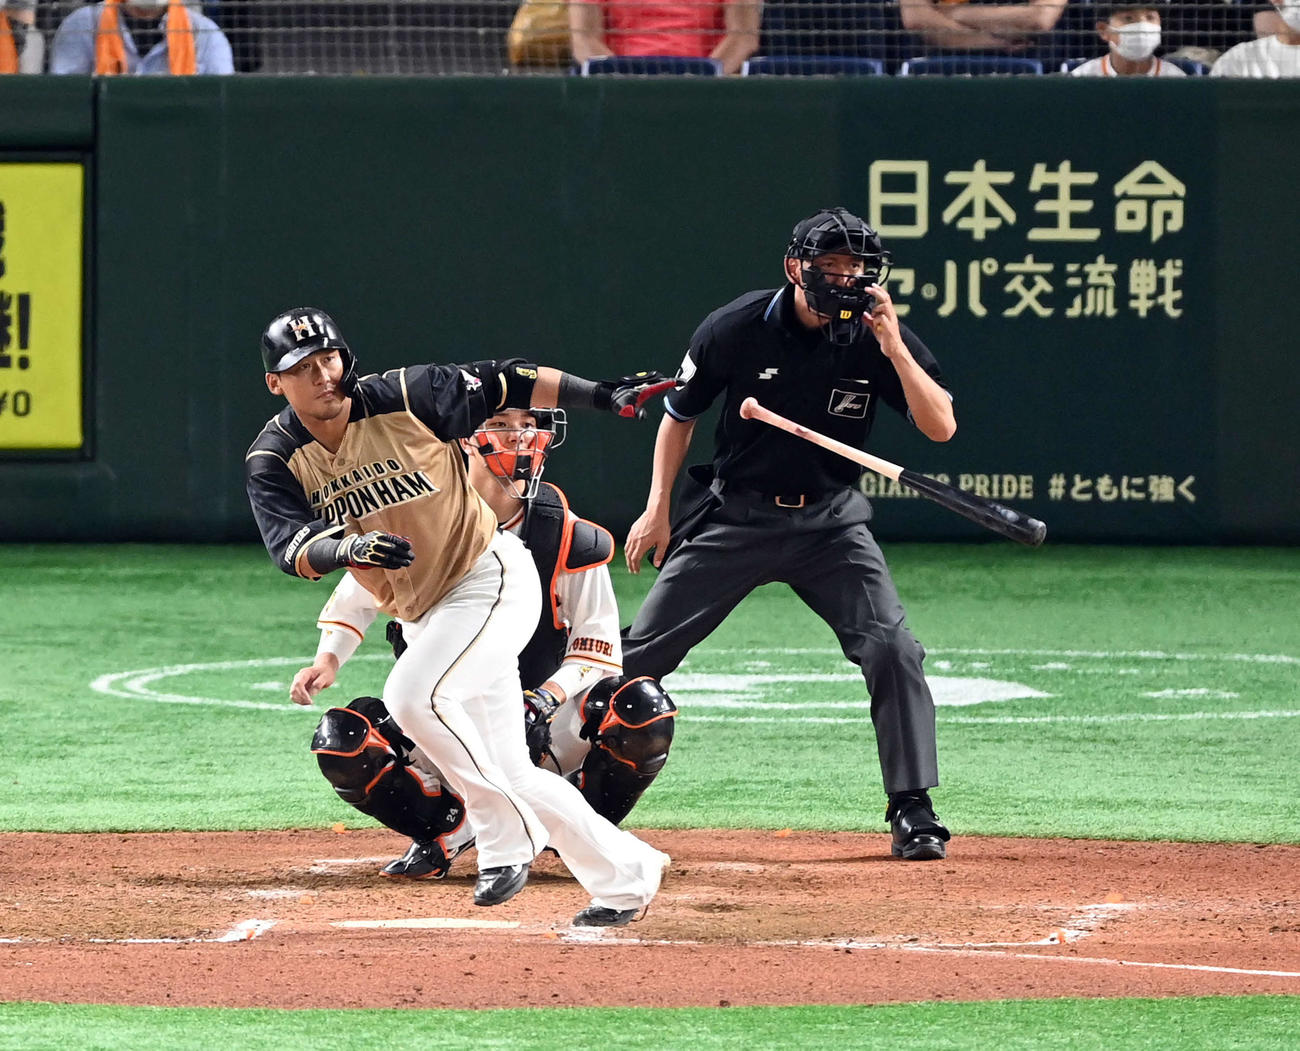 日本ハム中田翔64日ぶり適時打「ファンの皆さんの声援があったからこそ」 - プロ野球写真ニュース : 日刊スポーツ